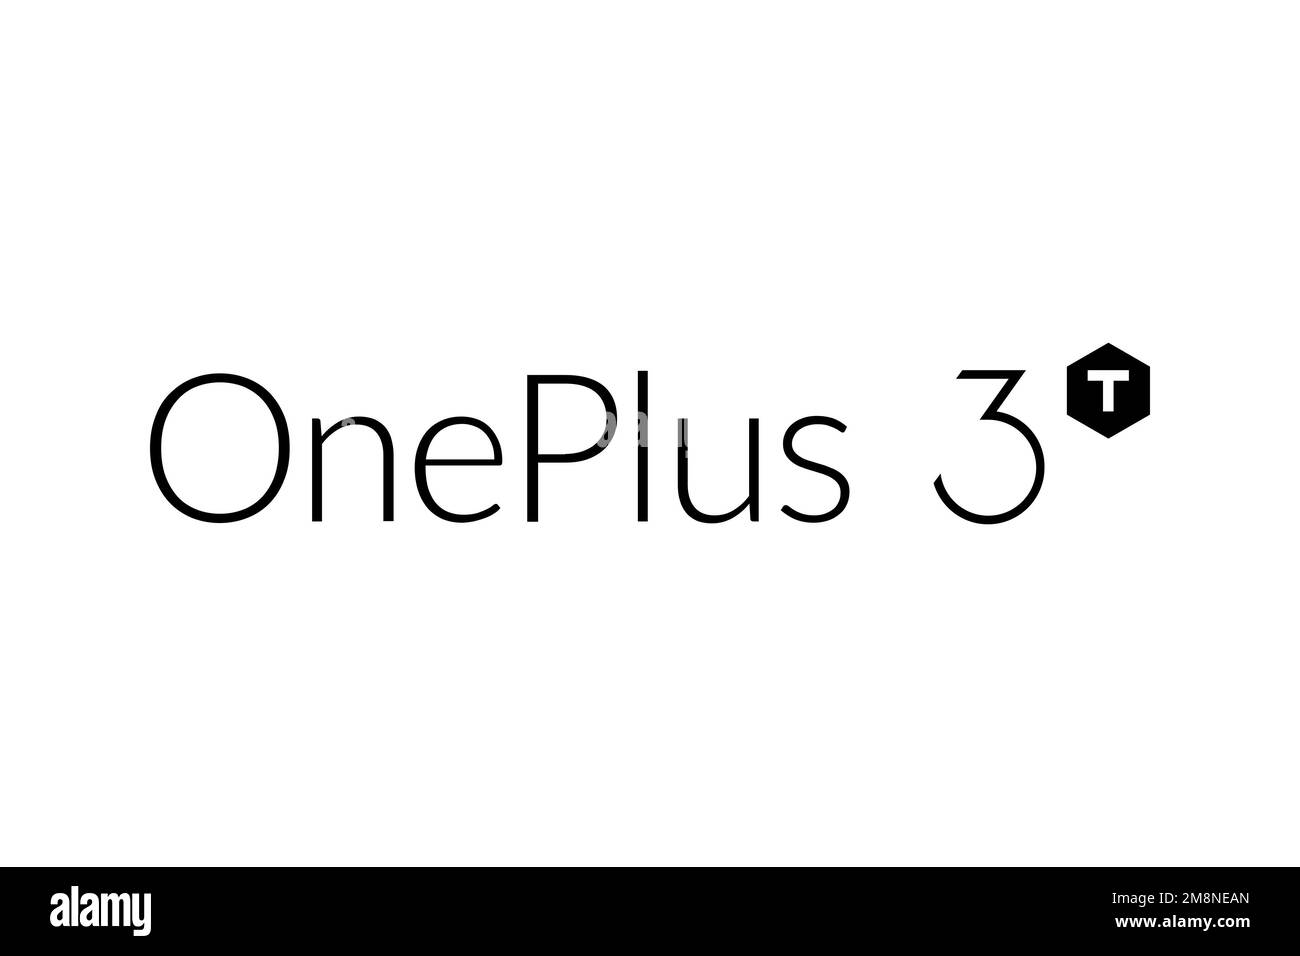 OnePlus 3T, Logo, White background Stock Photo